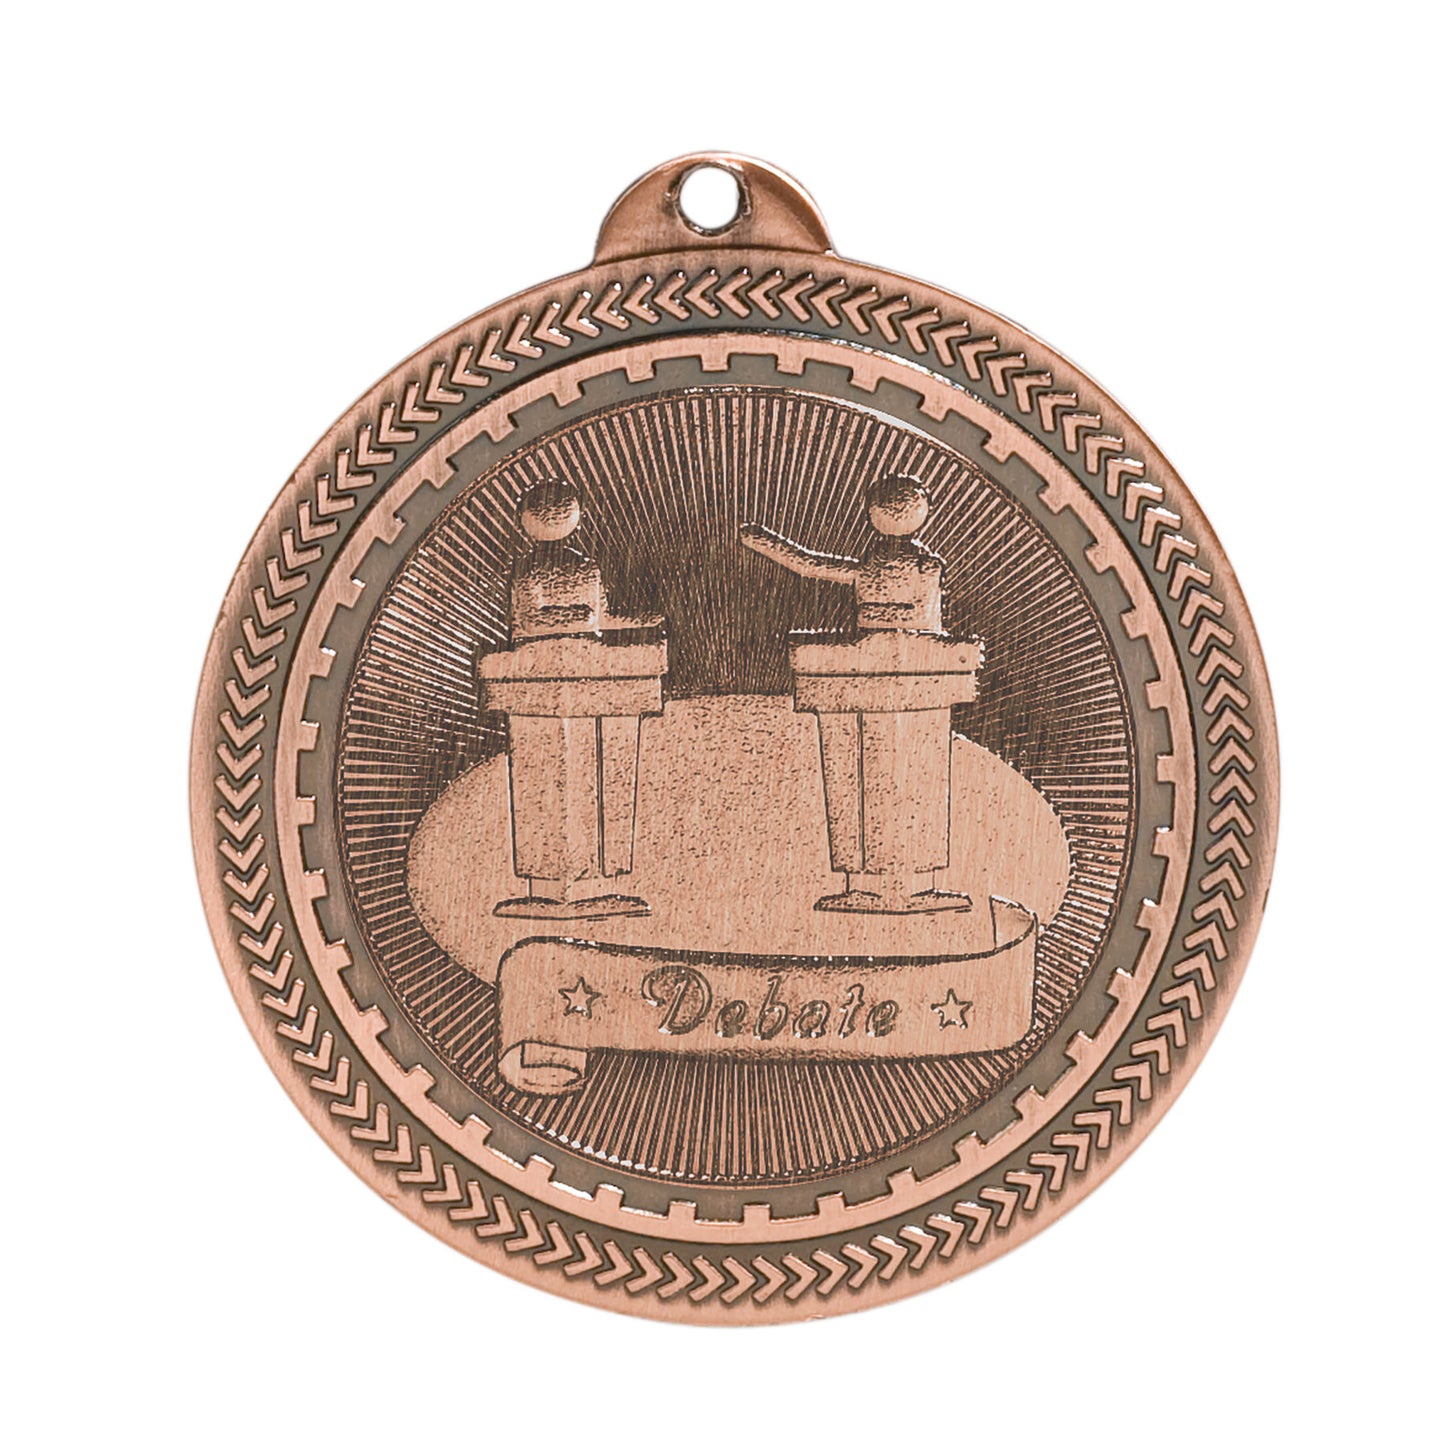 2" Debate Laserable BriteLazer Medal